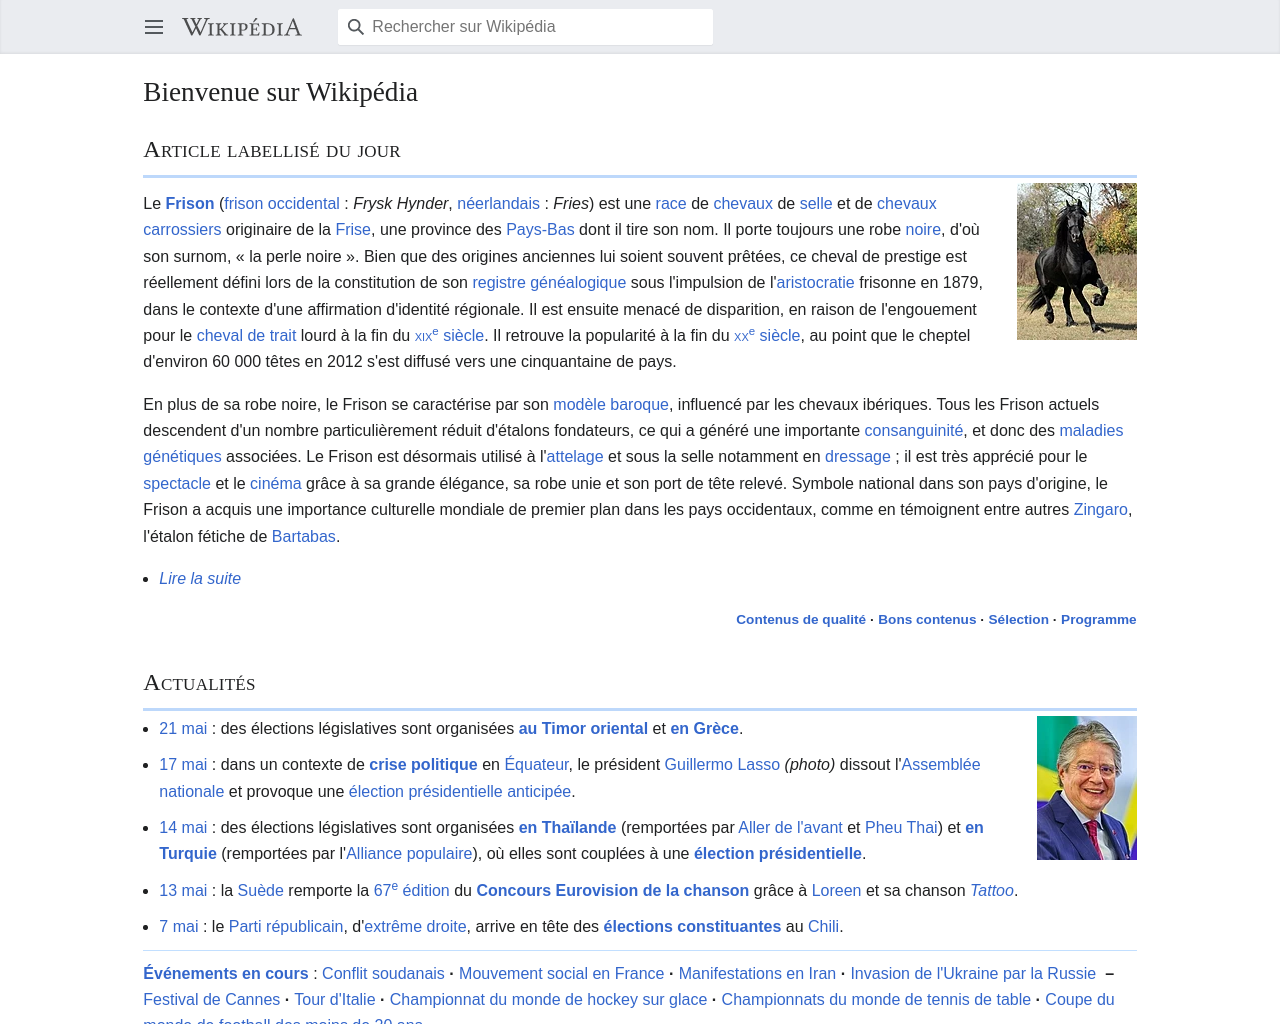 fr.m.wikipedia.org